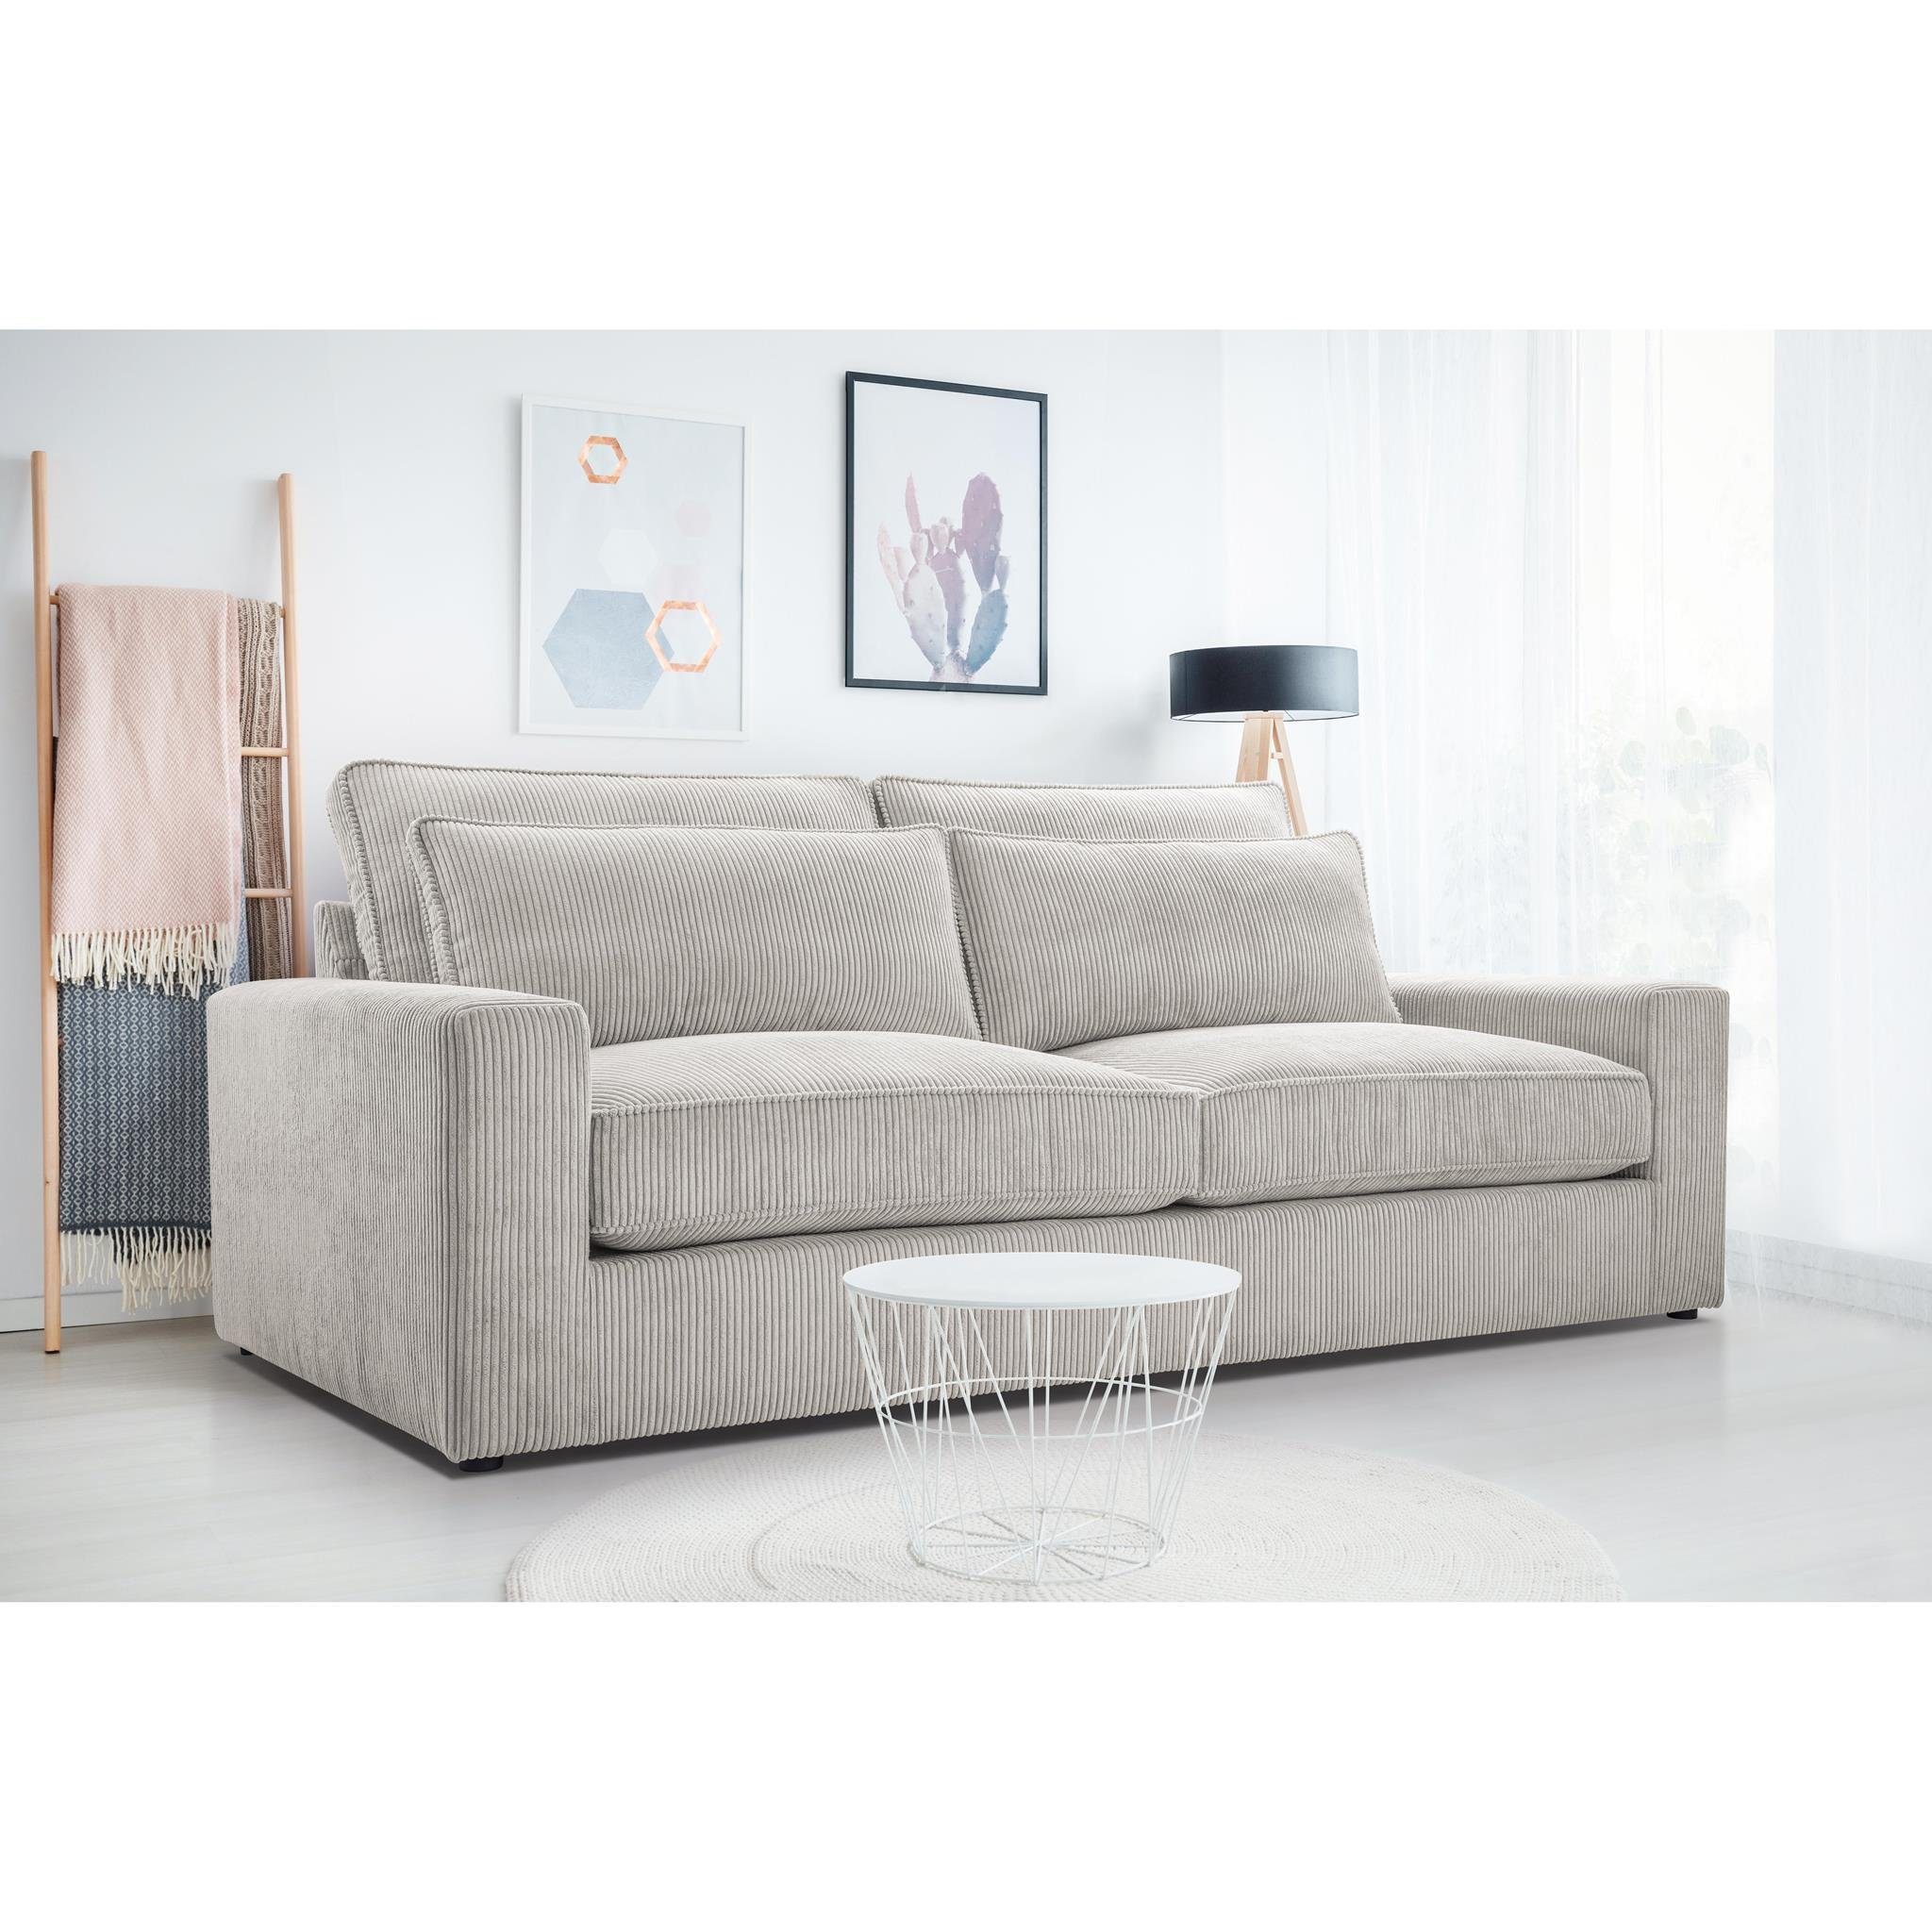 Beautysofa 3-Sitzer Como, Wellenfedern, Wohnzimmer, 221 cm Sofa im modernes Stil, Polstersofa aus Velours im Cord-Struktur Beige (lincoln 83)